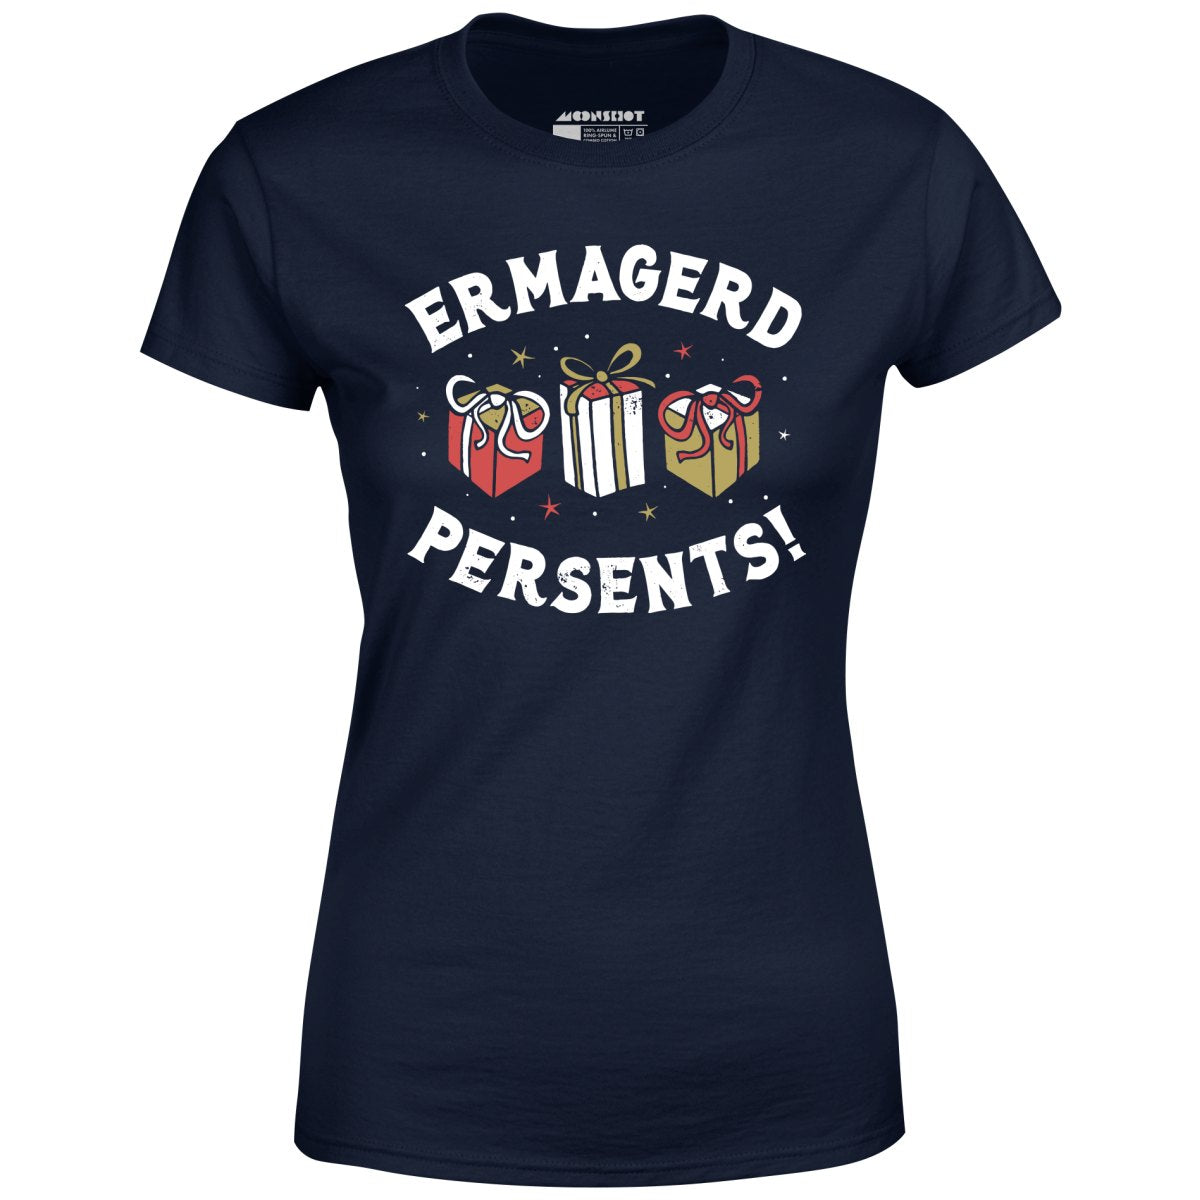 Ermagerd Persents! - Women's T-Shirt